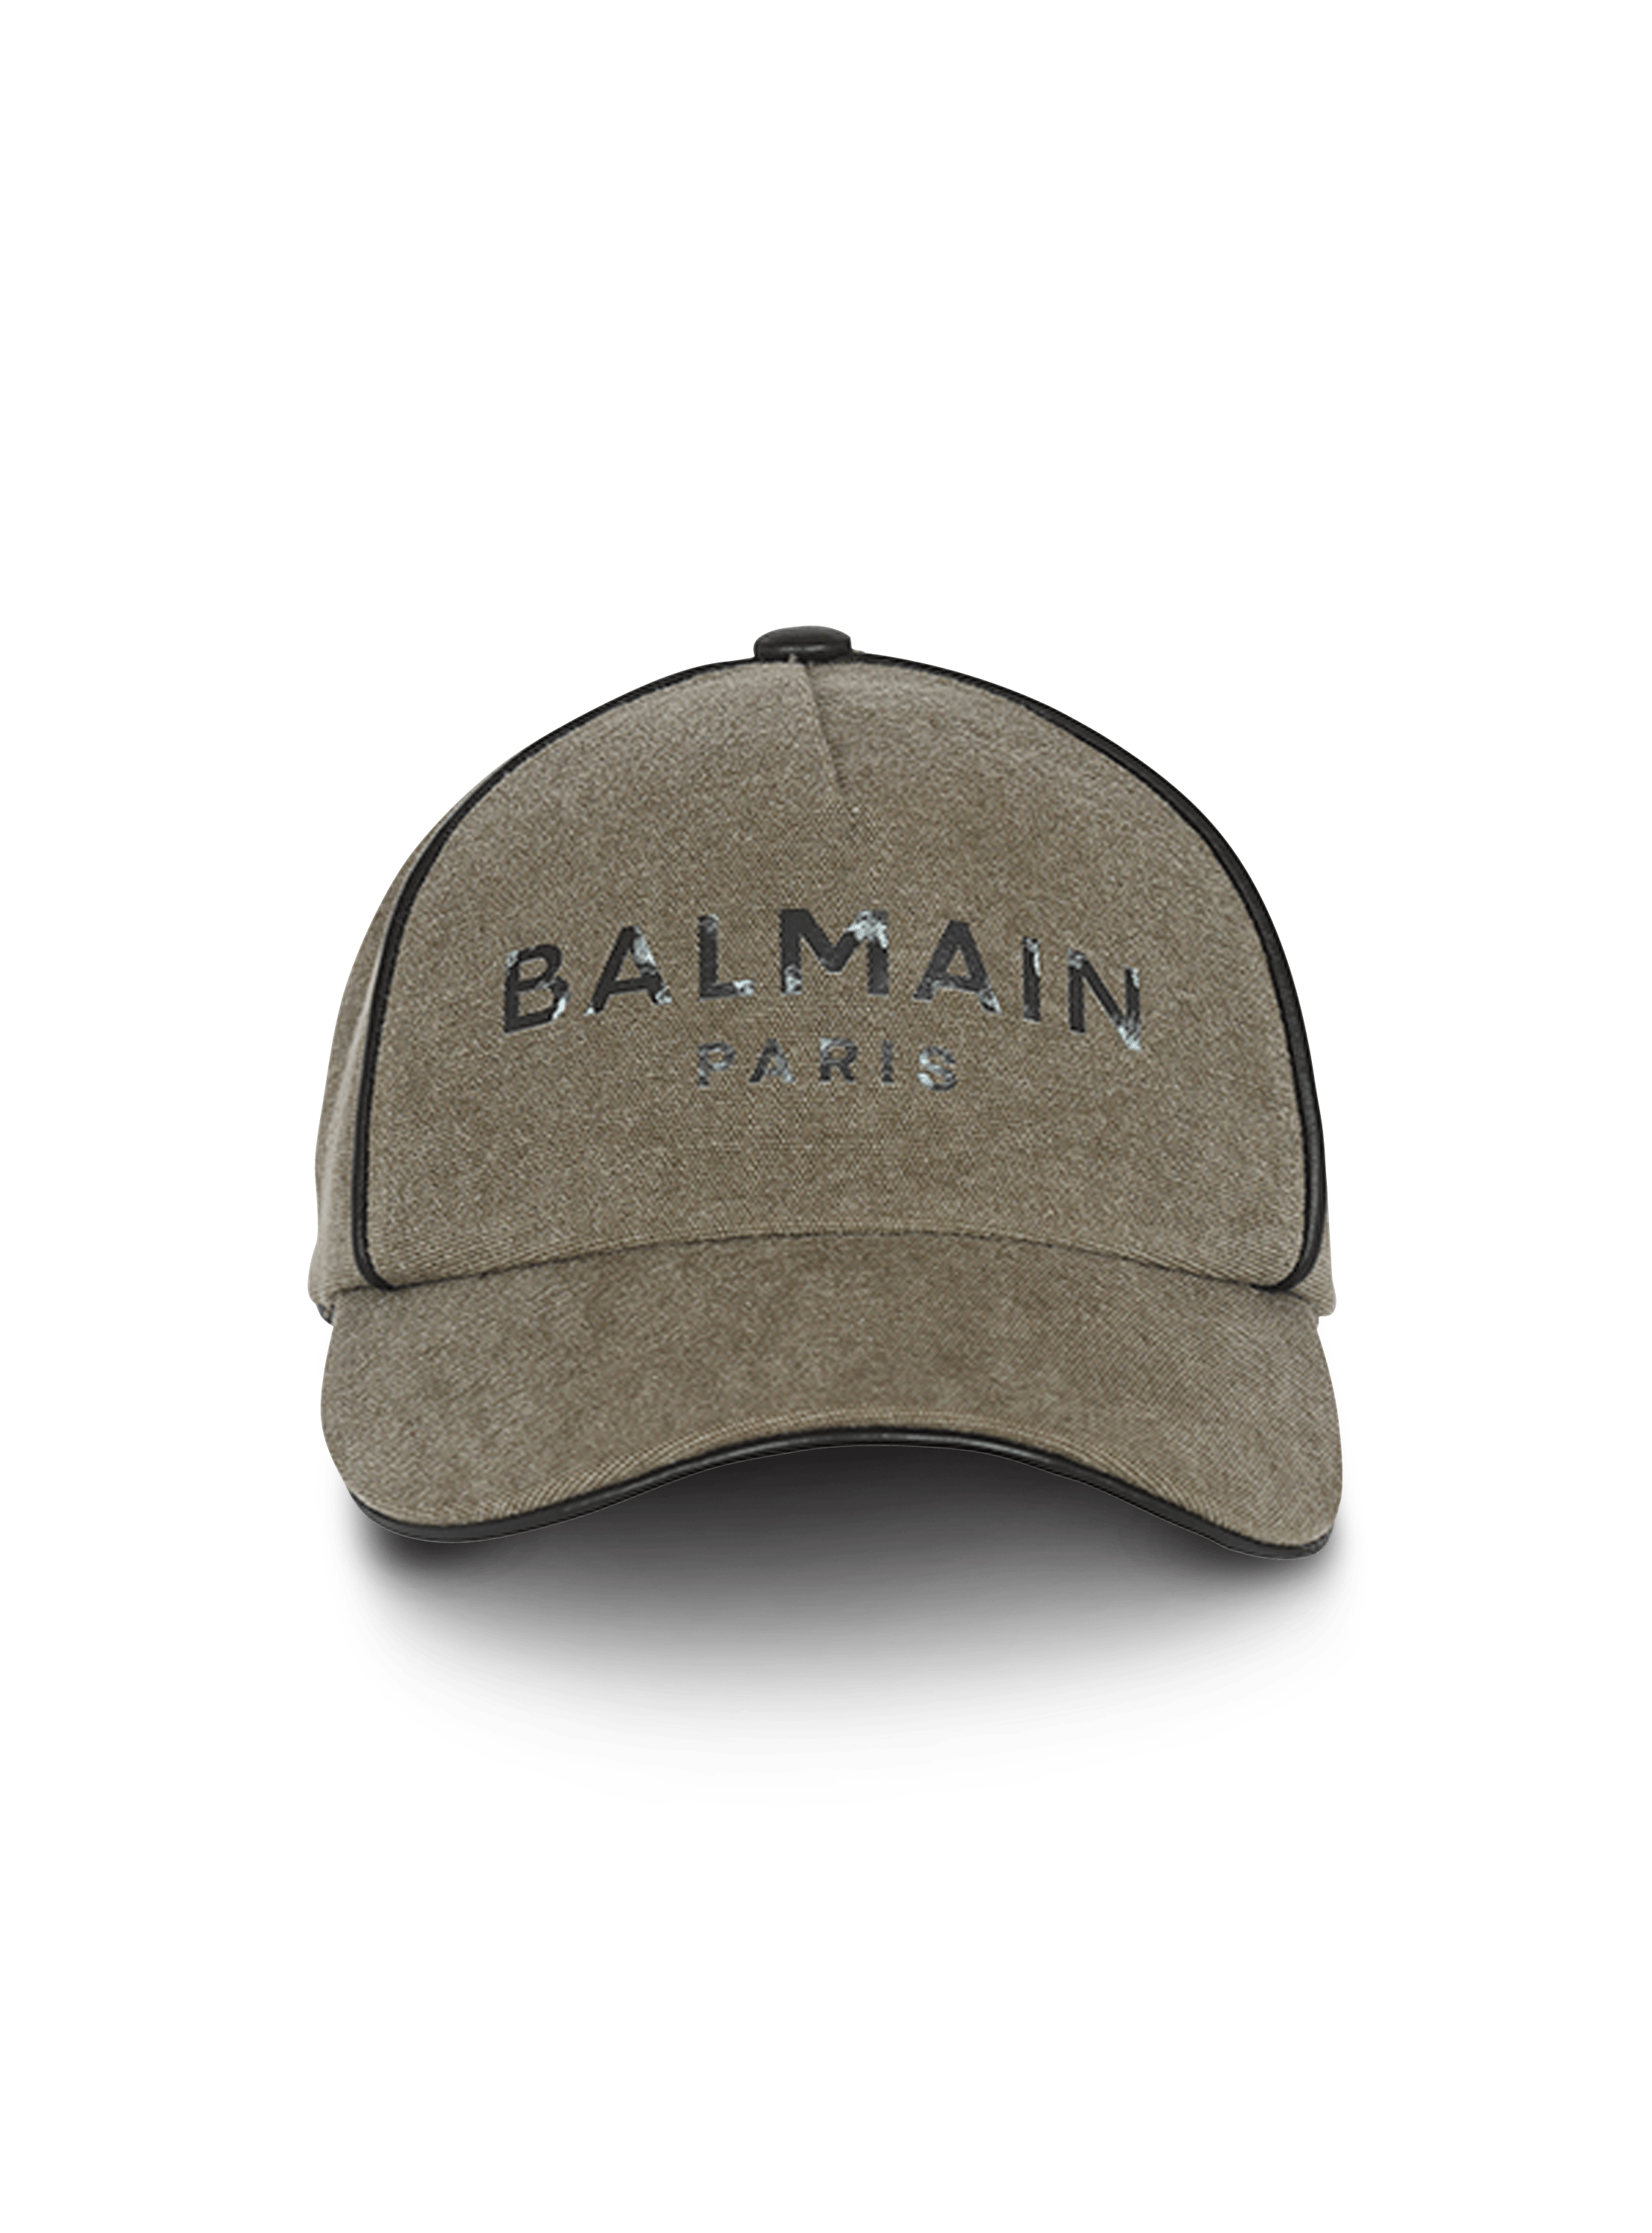 Cotton canvas cap with Balmain Paris logo